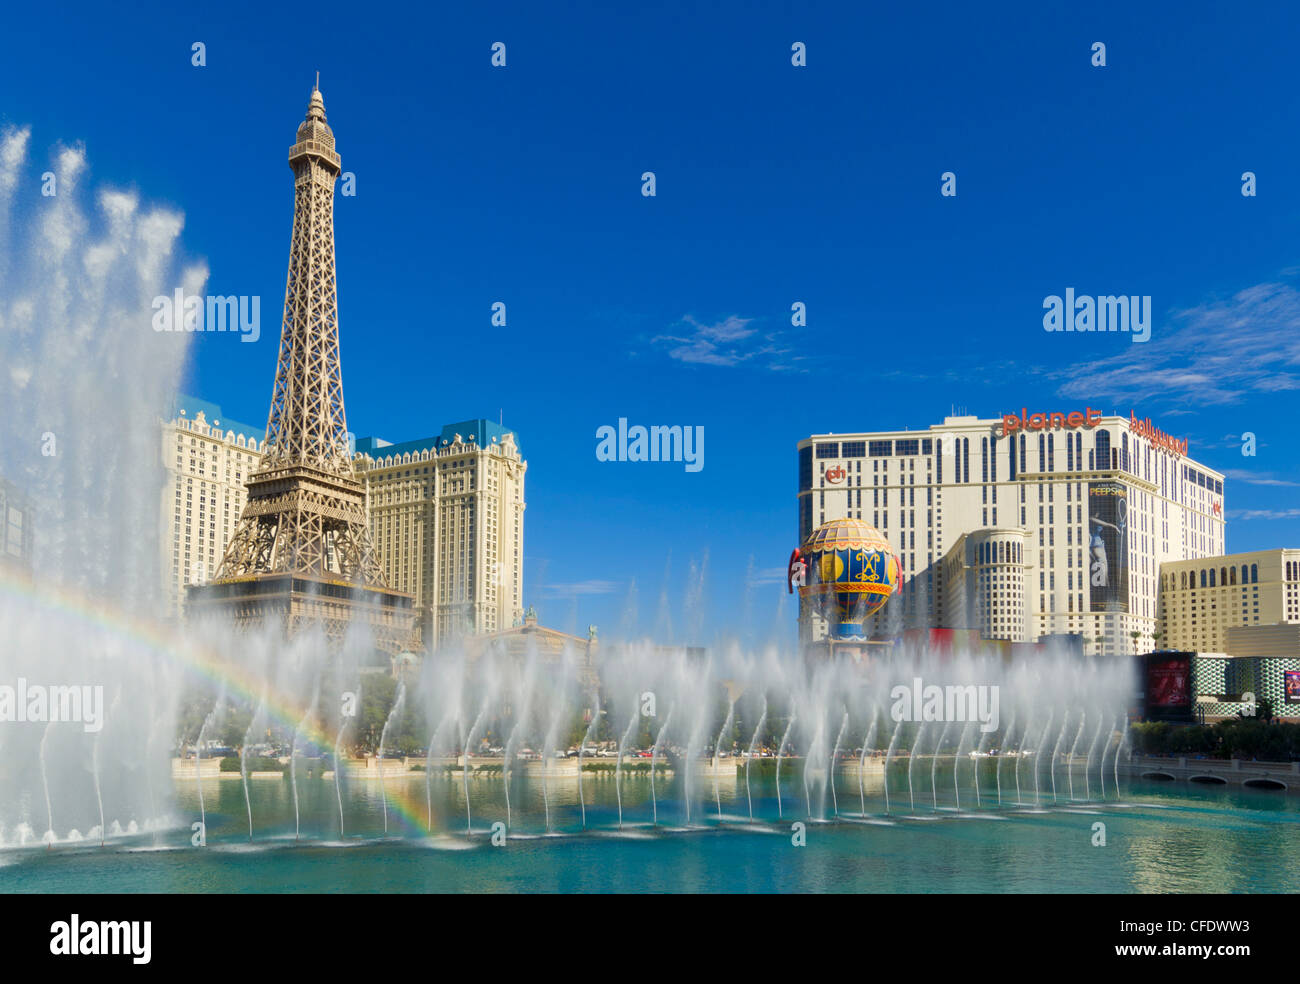 Regenbogen durch die tanzenden Wasserspiele des Bellagio Hotel, Strip, Las Vegas Boulevard South, Las Vegas, Nevada, USA Stockfoto